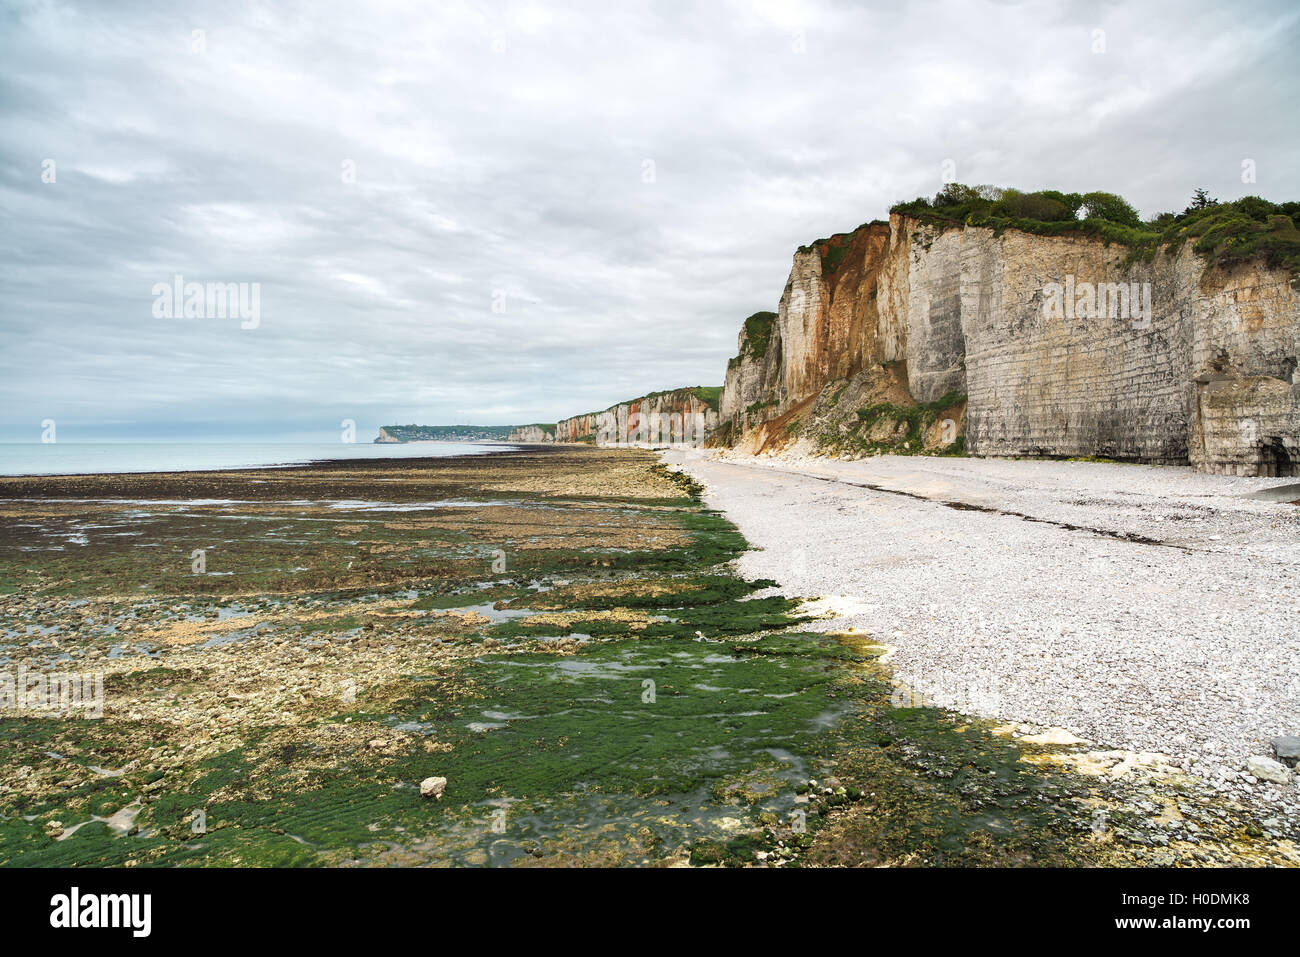 Yport und Fecamp, Normandie. Strand, Klippen und Felsen im Meer bei Ebbe. Frankreich, Europa. Stockfoto